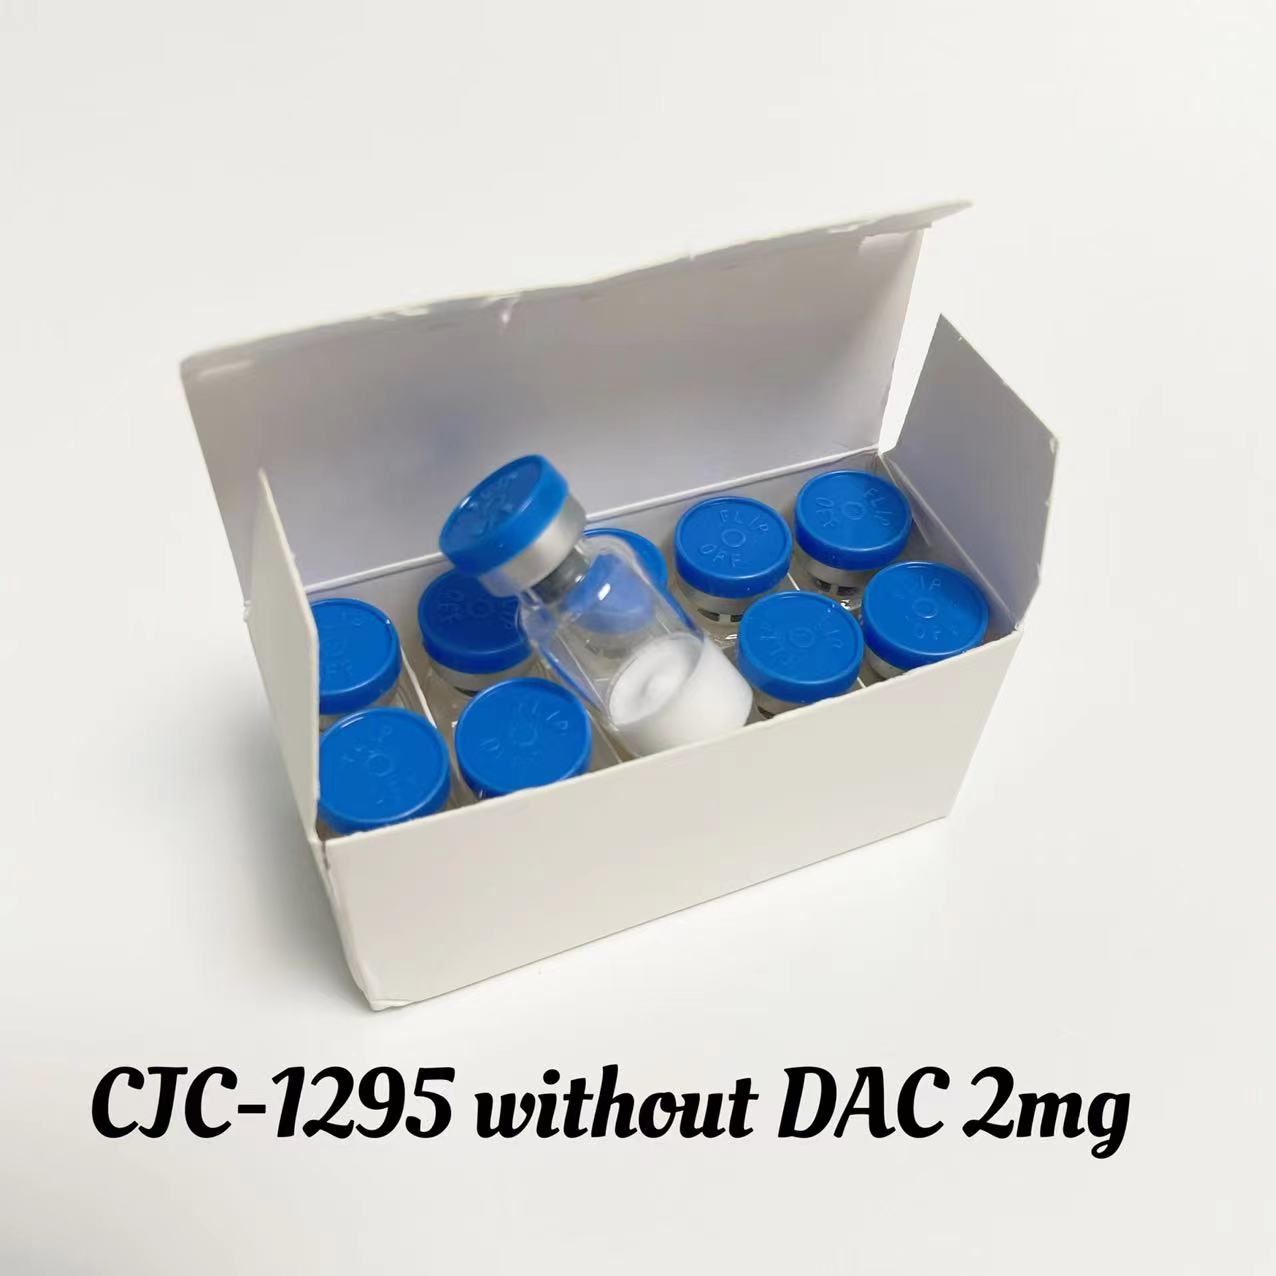 CJC-1295 without DAC